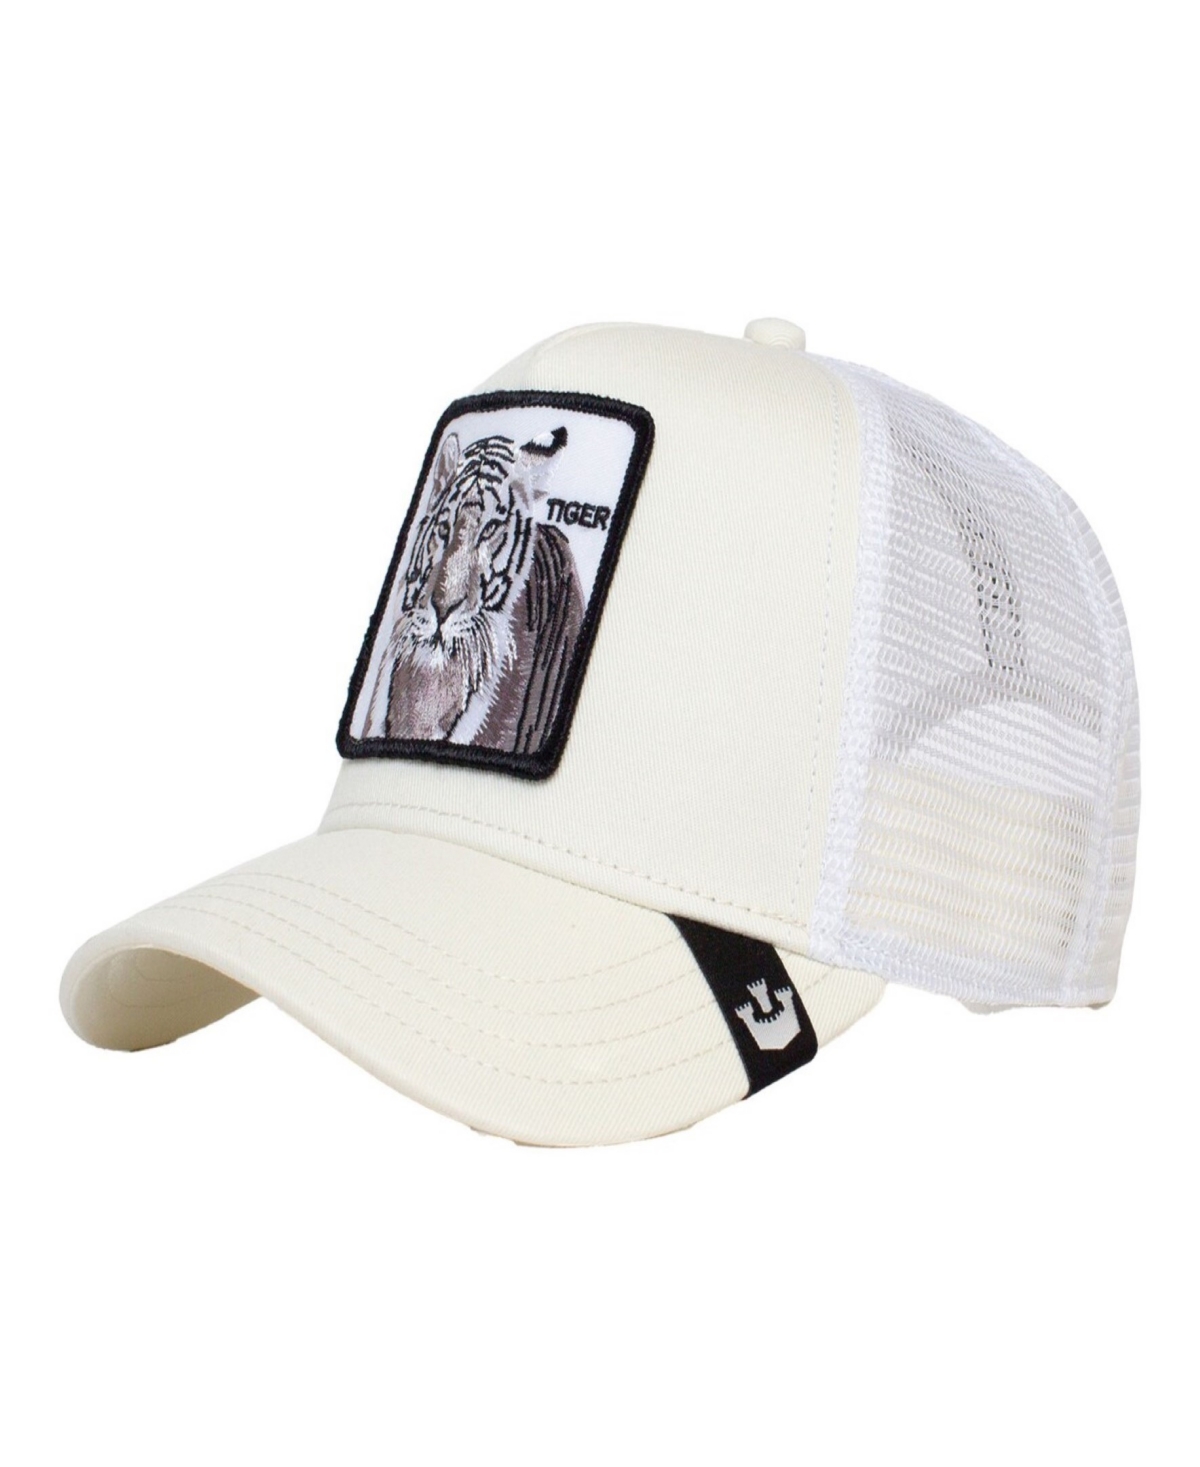 . Goorin Bros Men's White Tiger Trucker Adjustable Hat - White